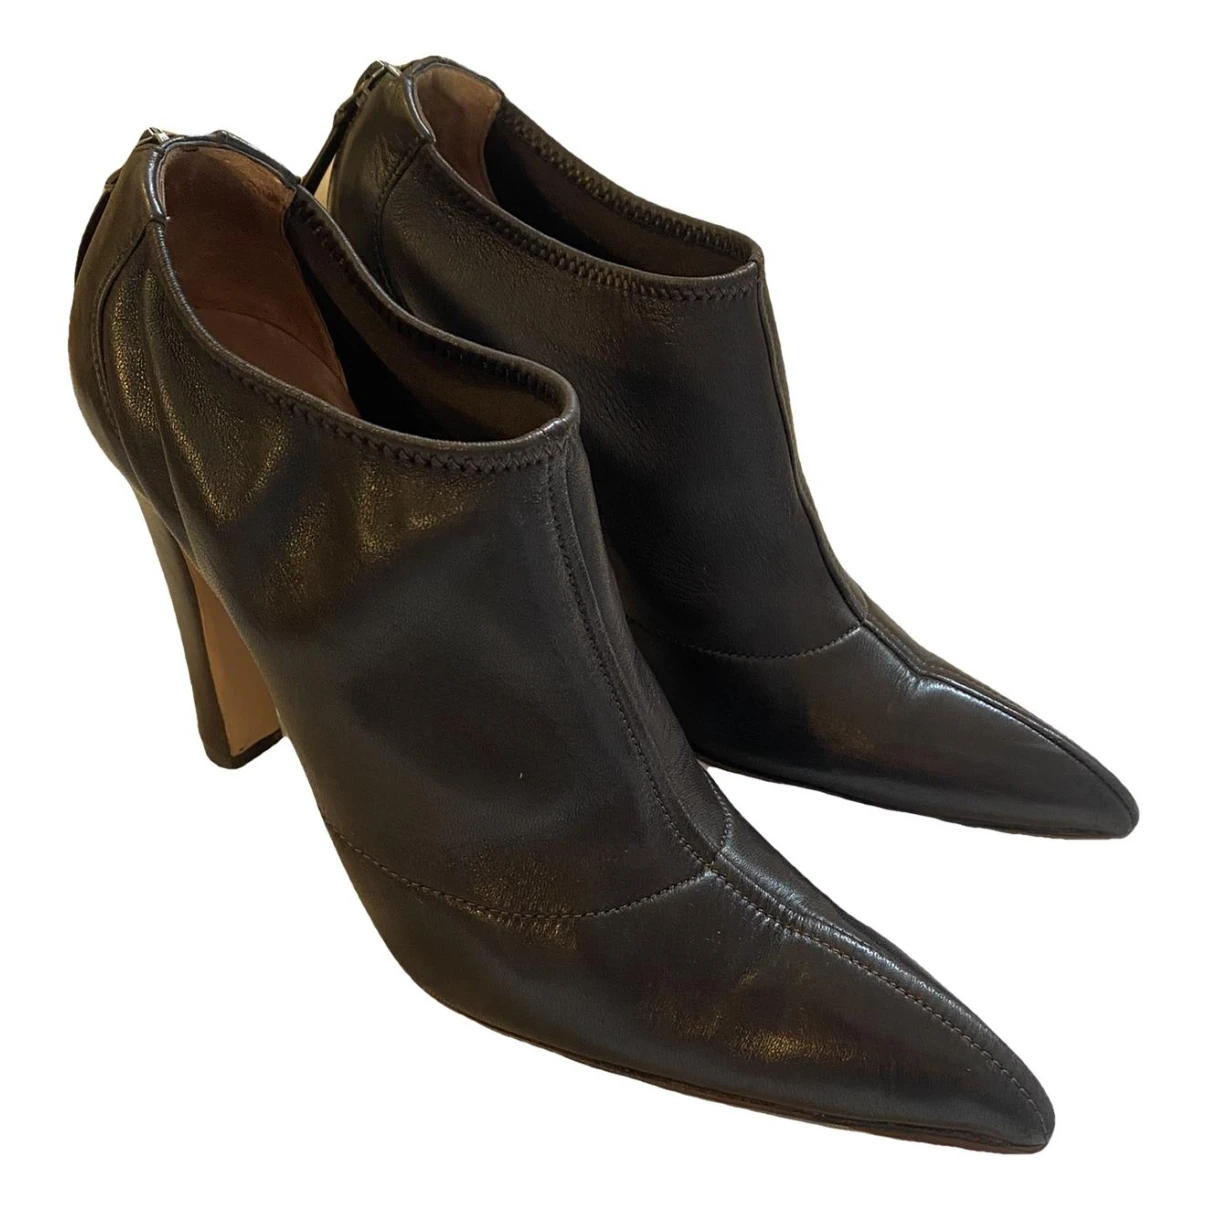 Pre-owned Alaïa Leather Heels In Brown